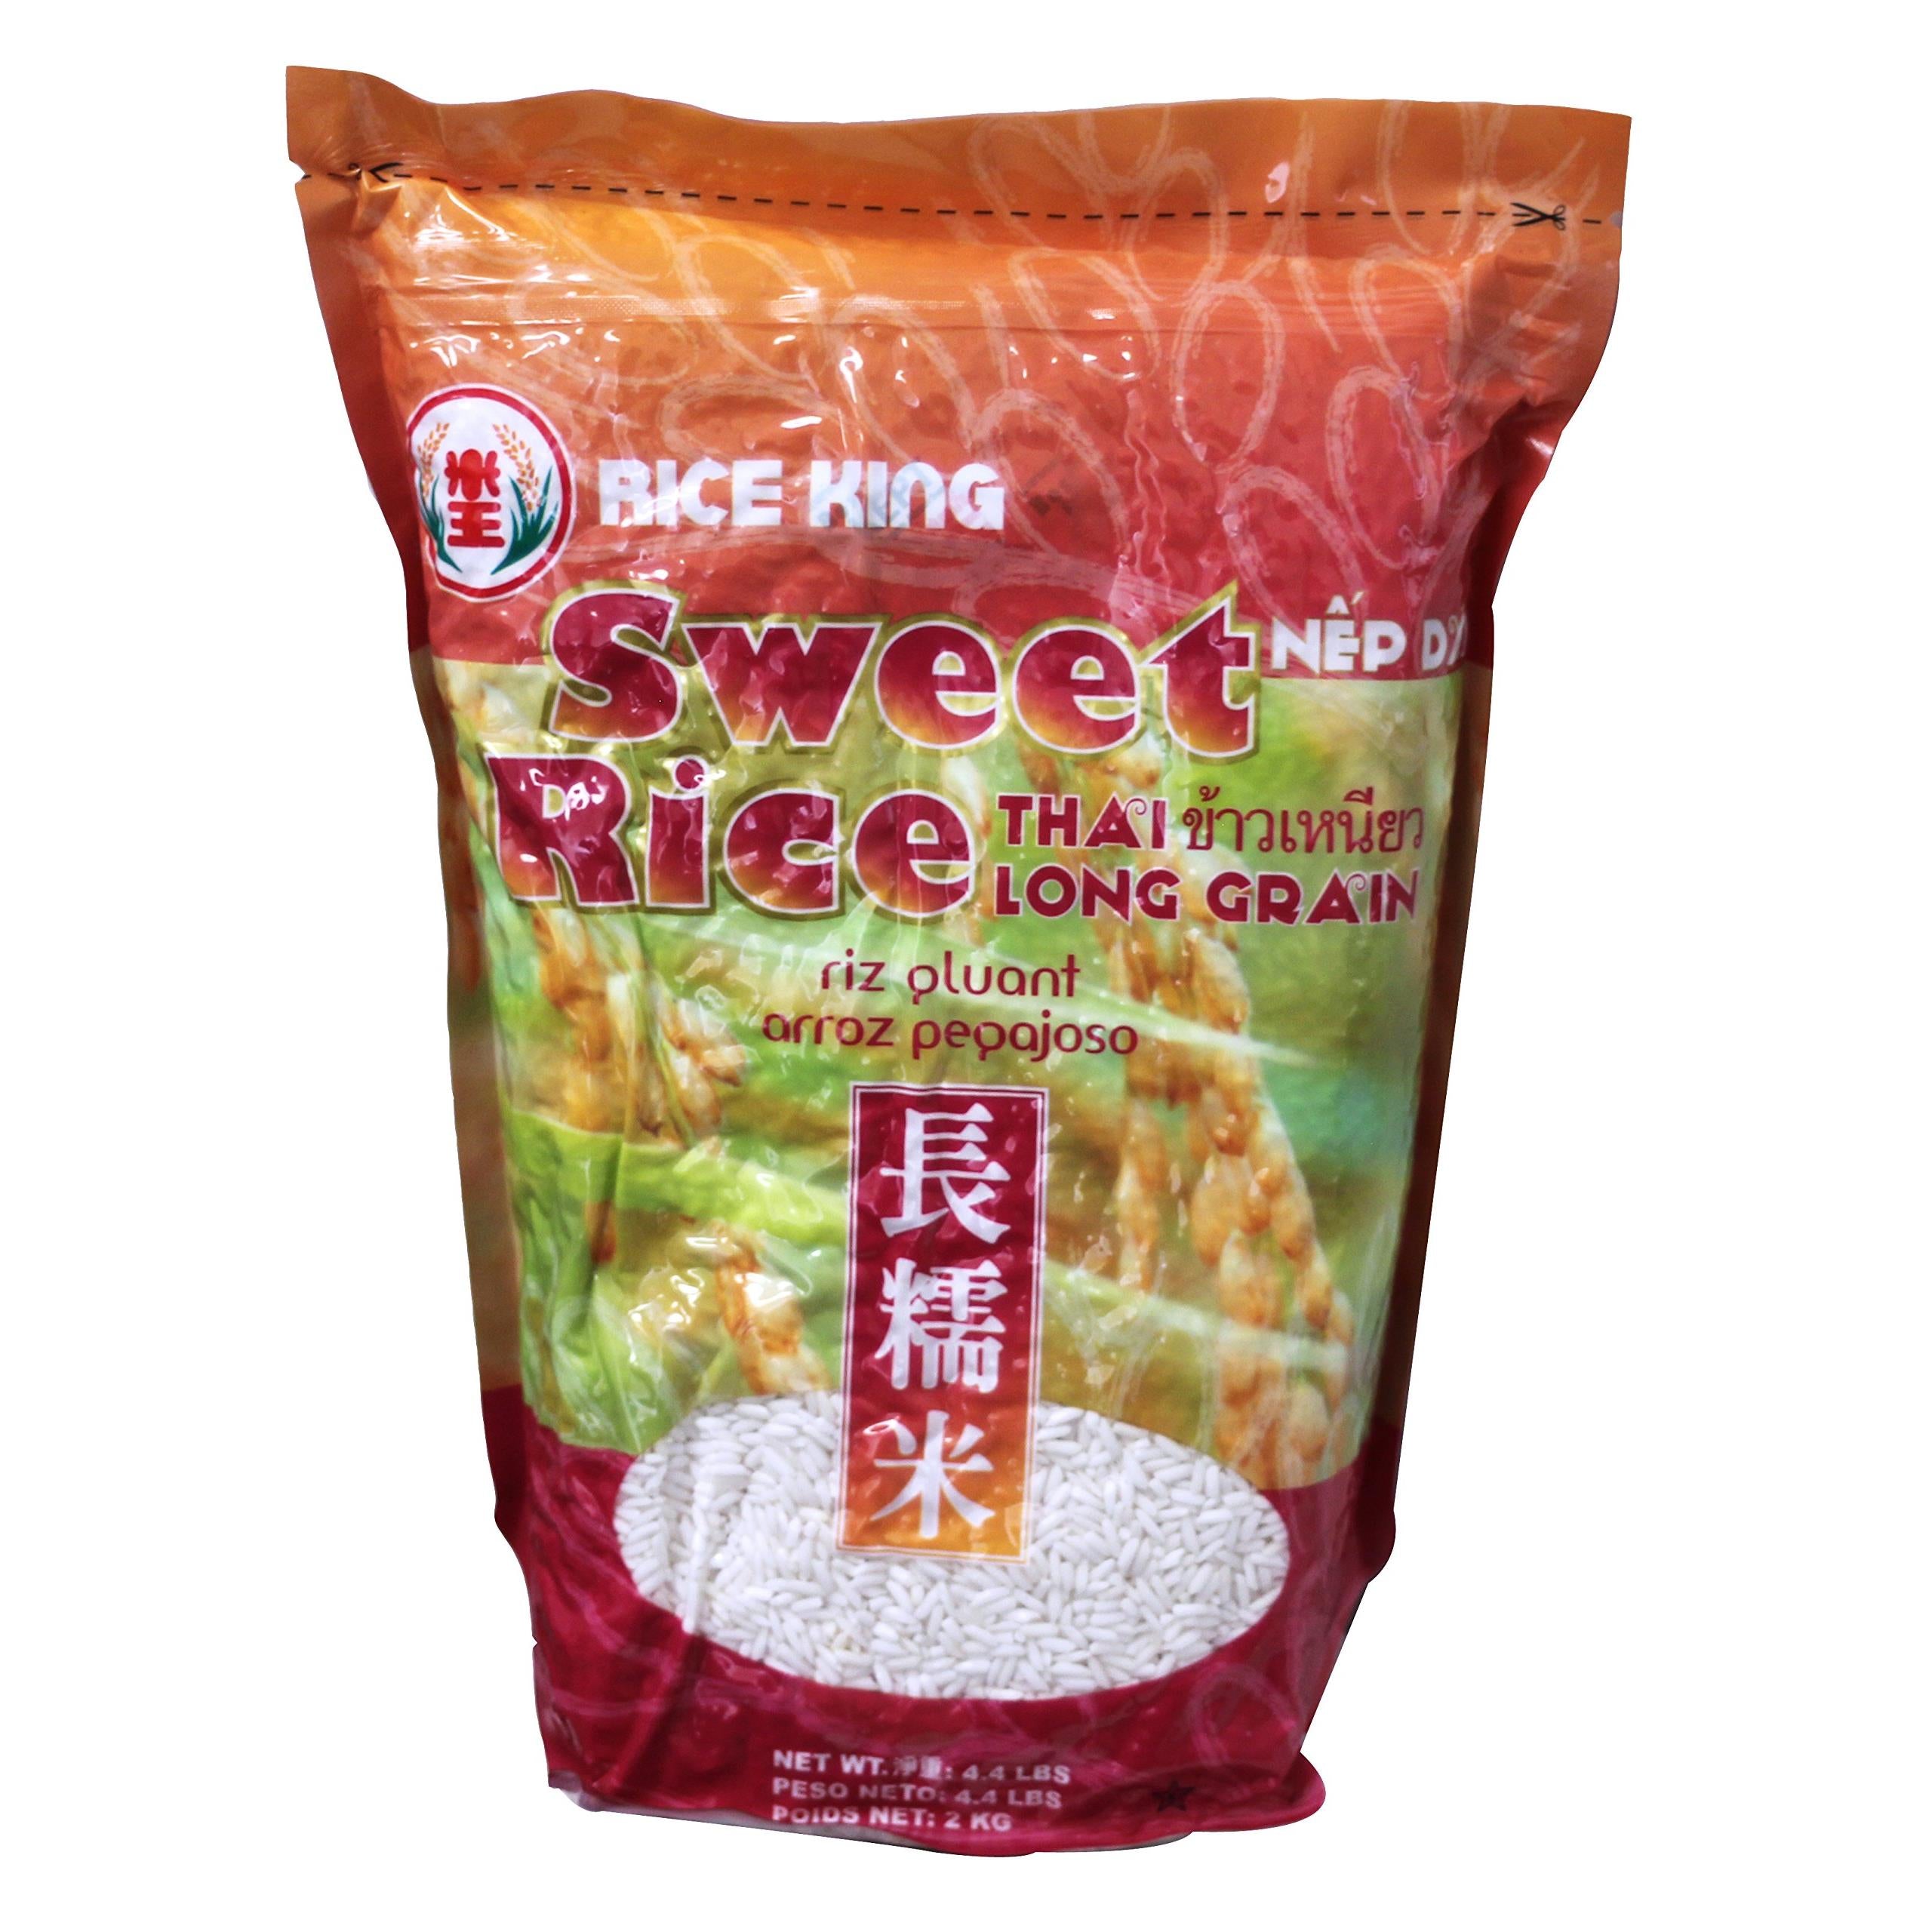 米王 长糯米 Rice King Thai Sweet Rice -long grain 4.4lbs